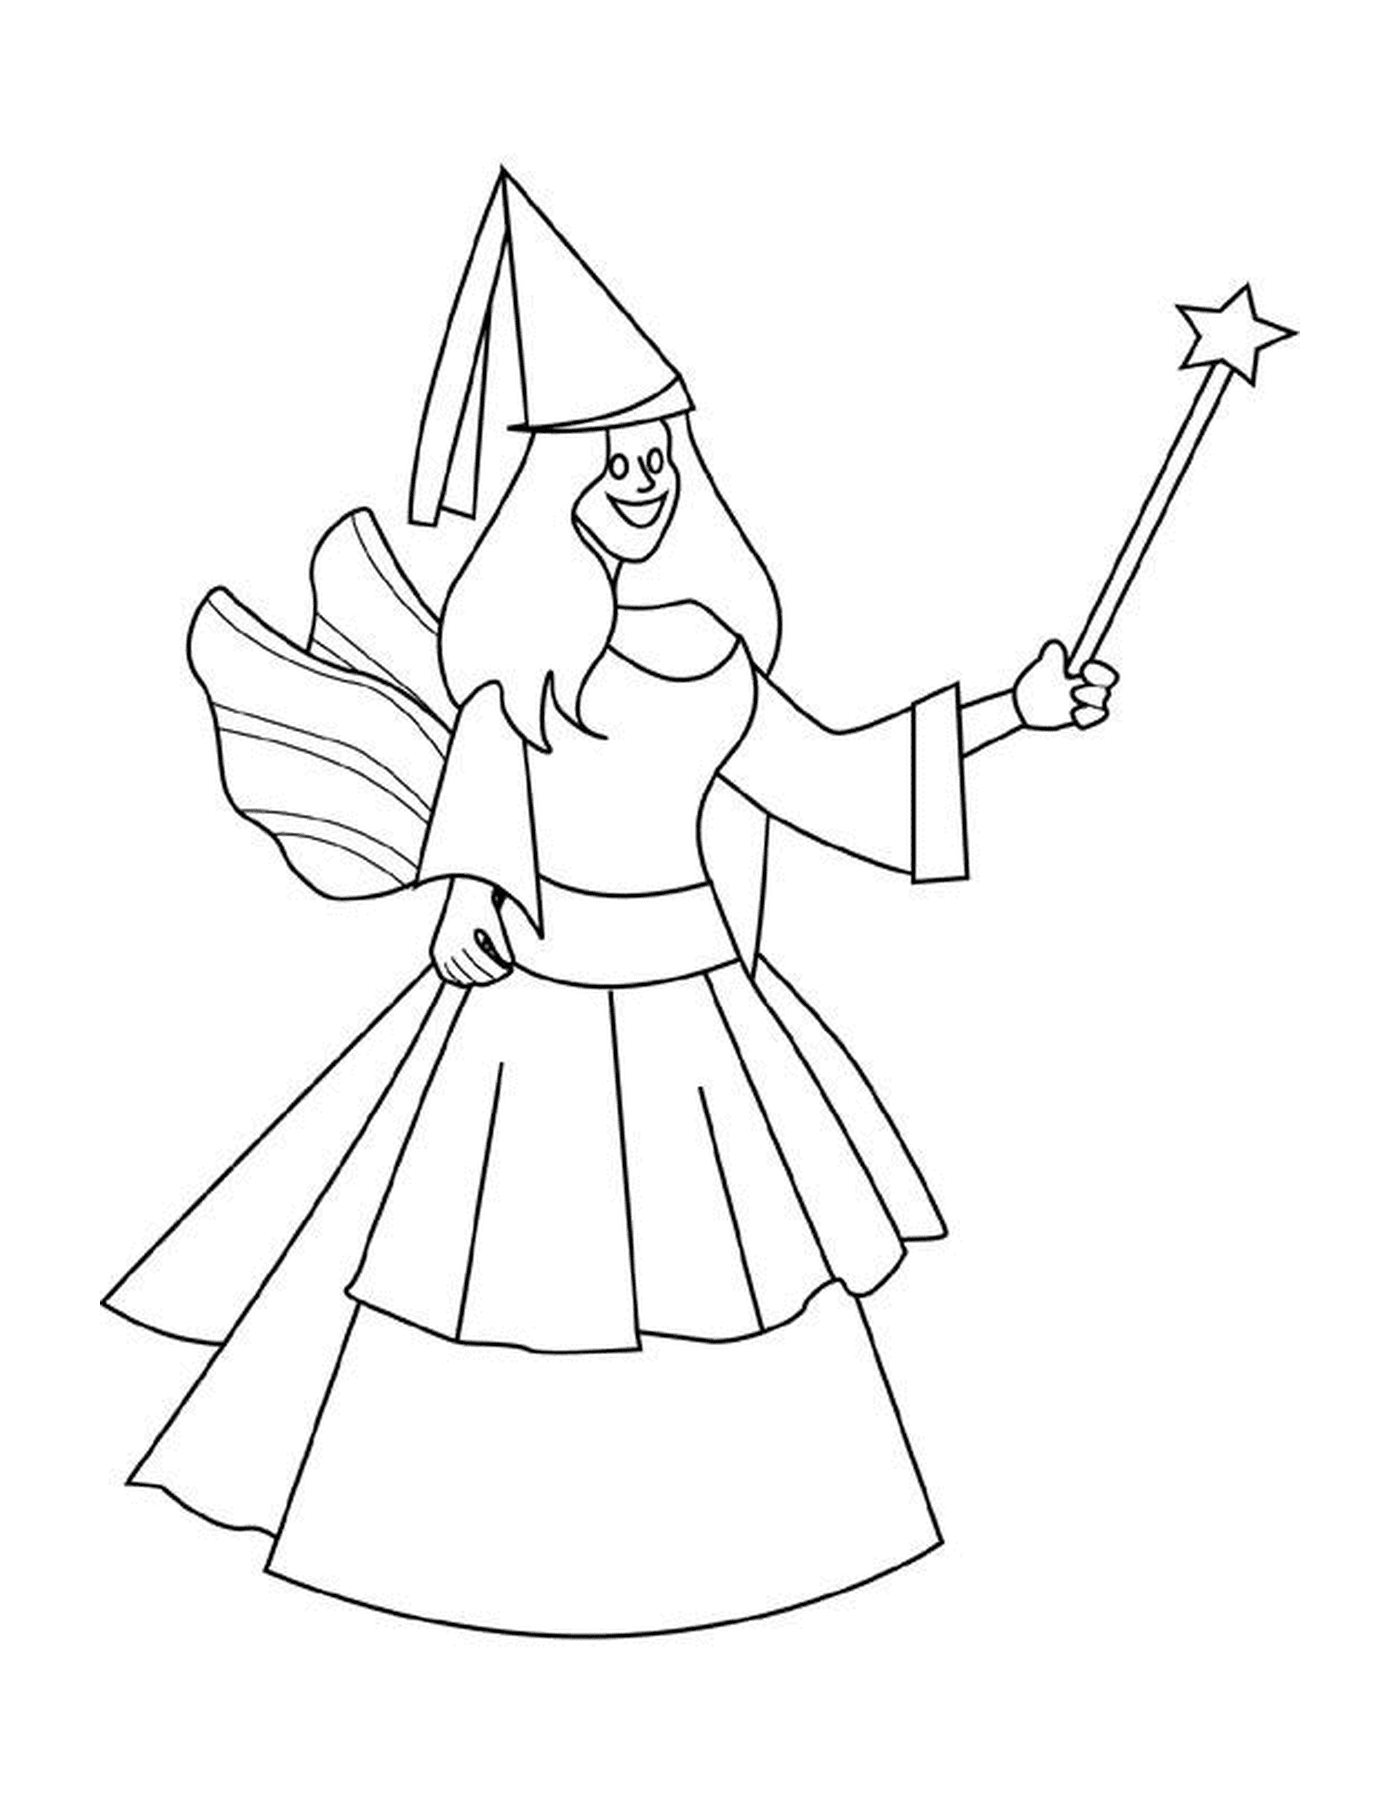  Una mujer sosteniendo una varita mágica 